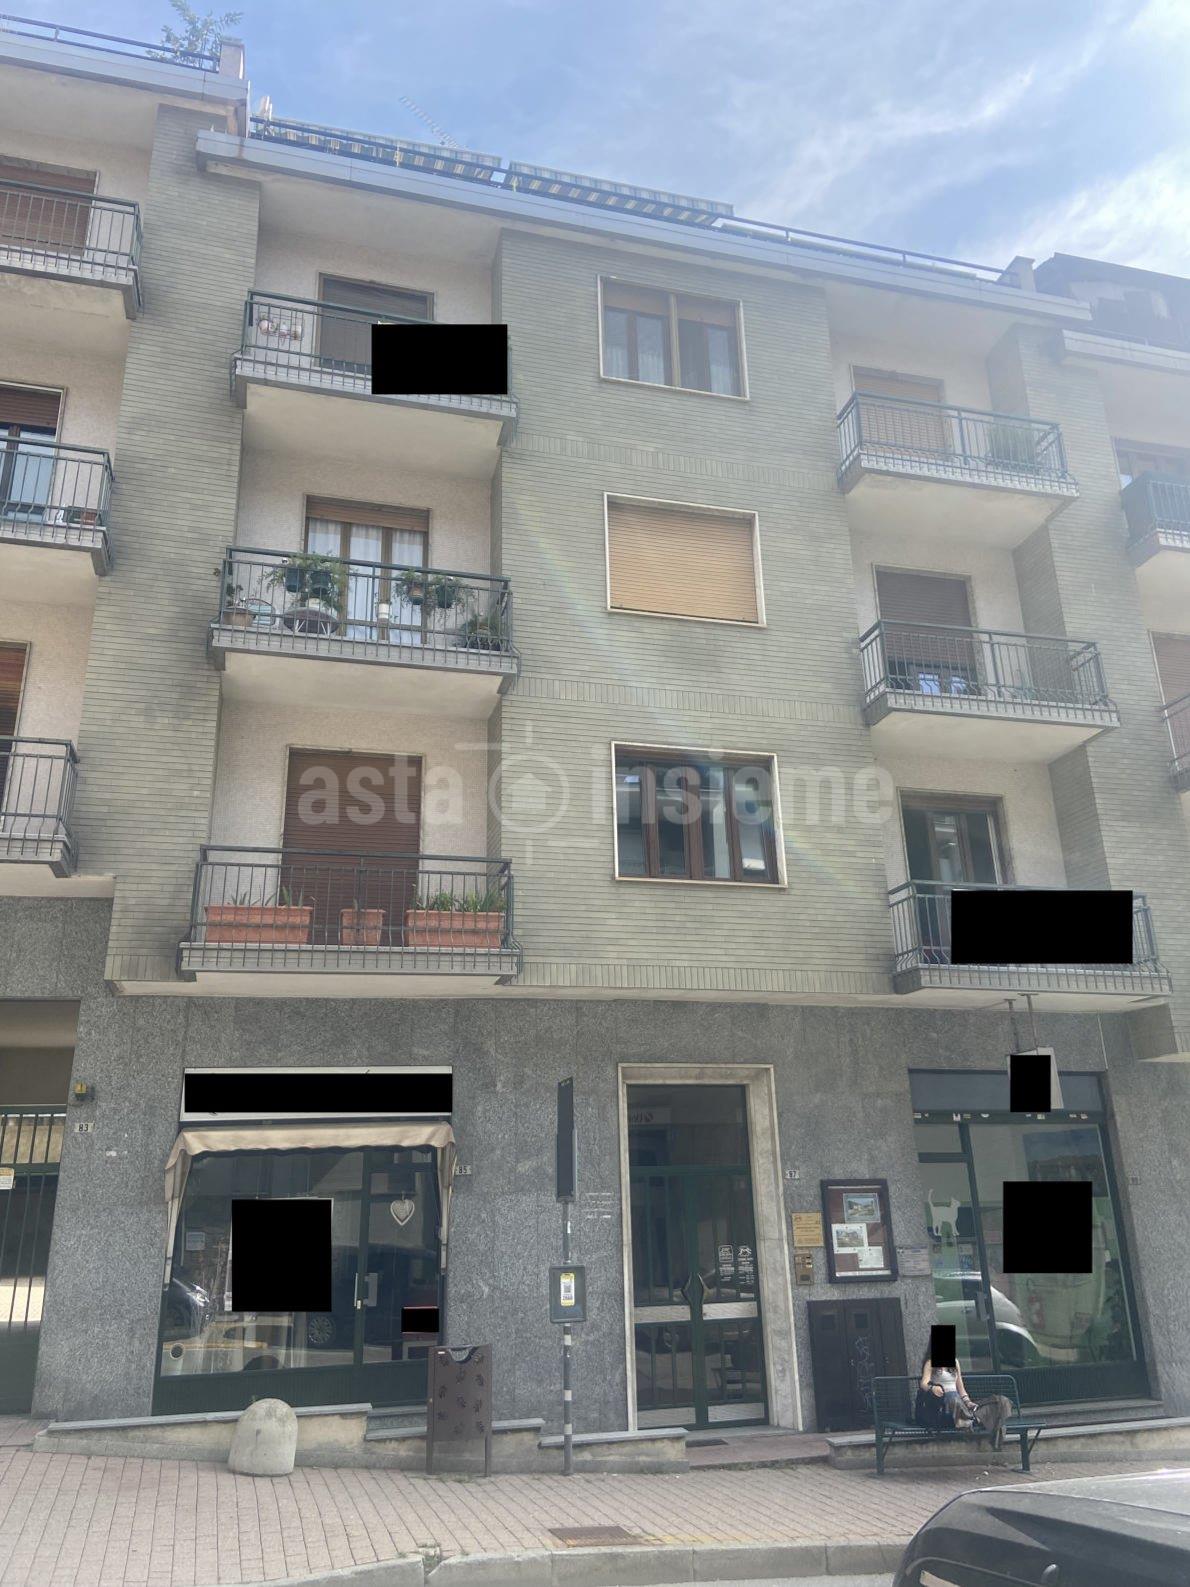 Appartamento Via n. Roma 87 PINO TORINESE  di 89,00 Mq. oltre Box singolo